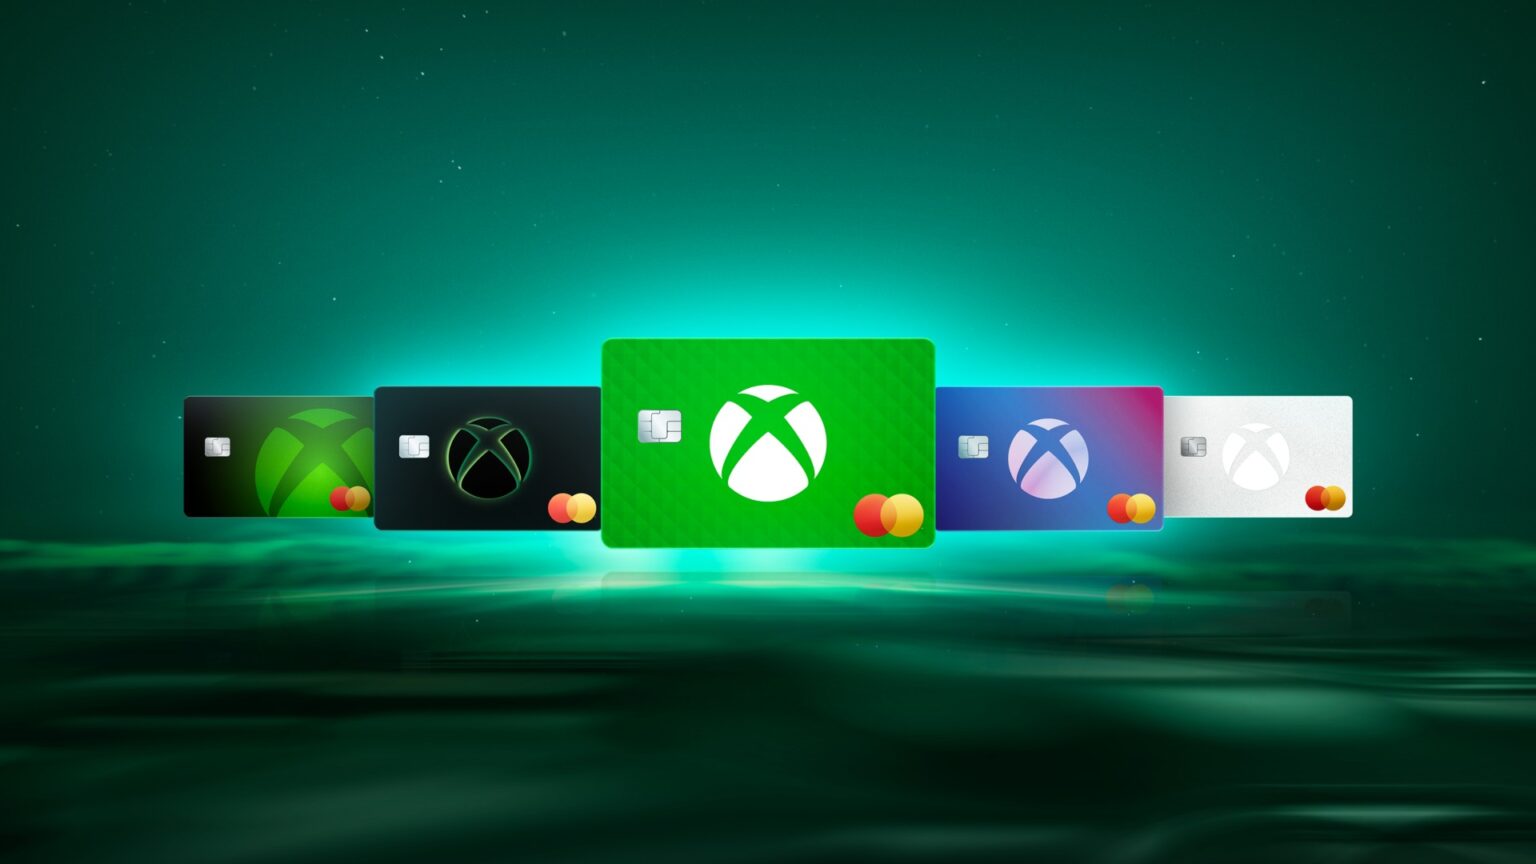 Xbox-Mastercard_New-1_1920x1080_JPG-943a1aac2362a45540bf-1536x864.jpg